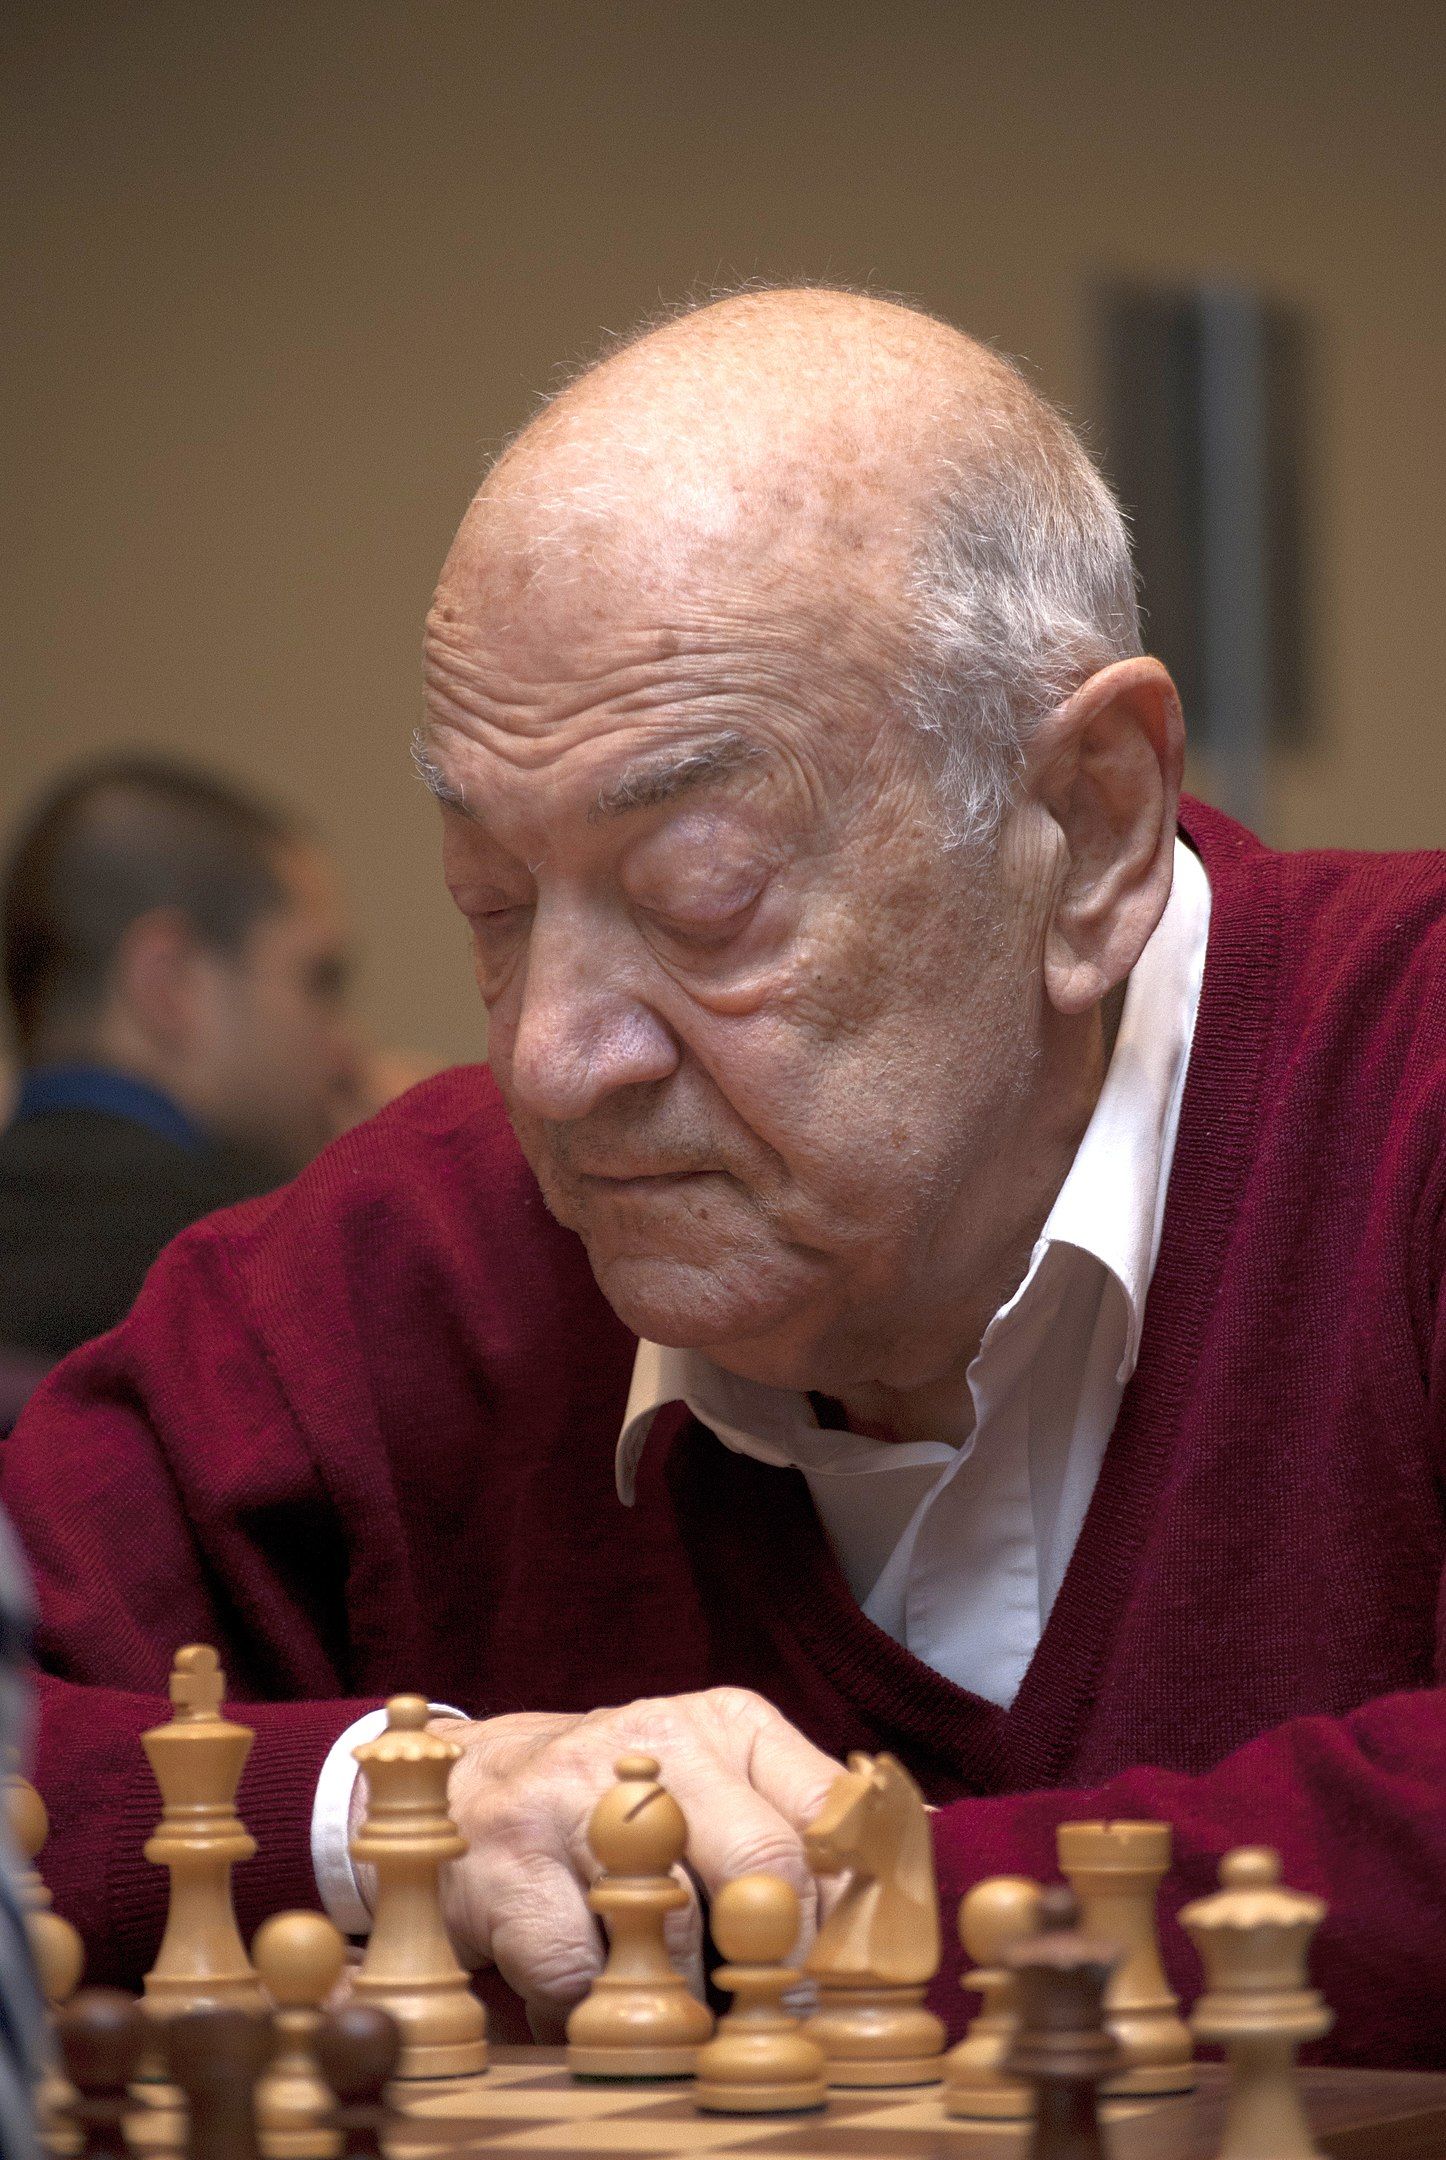 Chess game: Karpov x Korchnoi